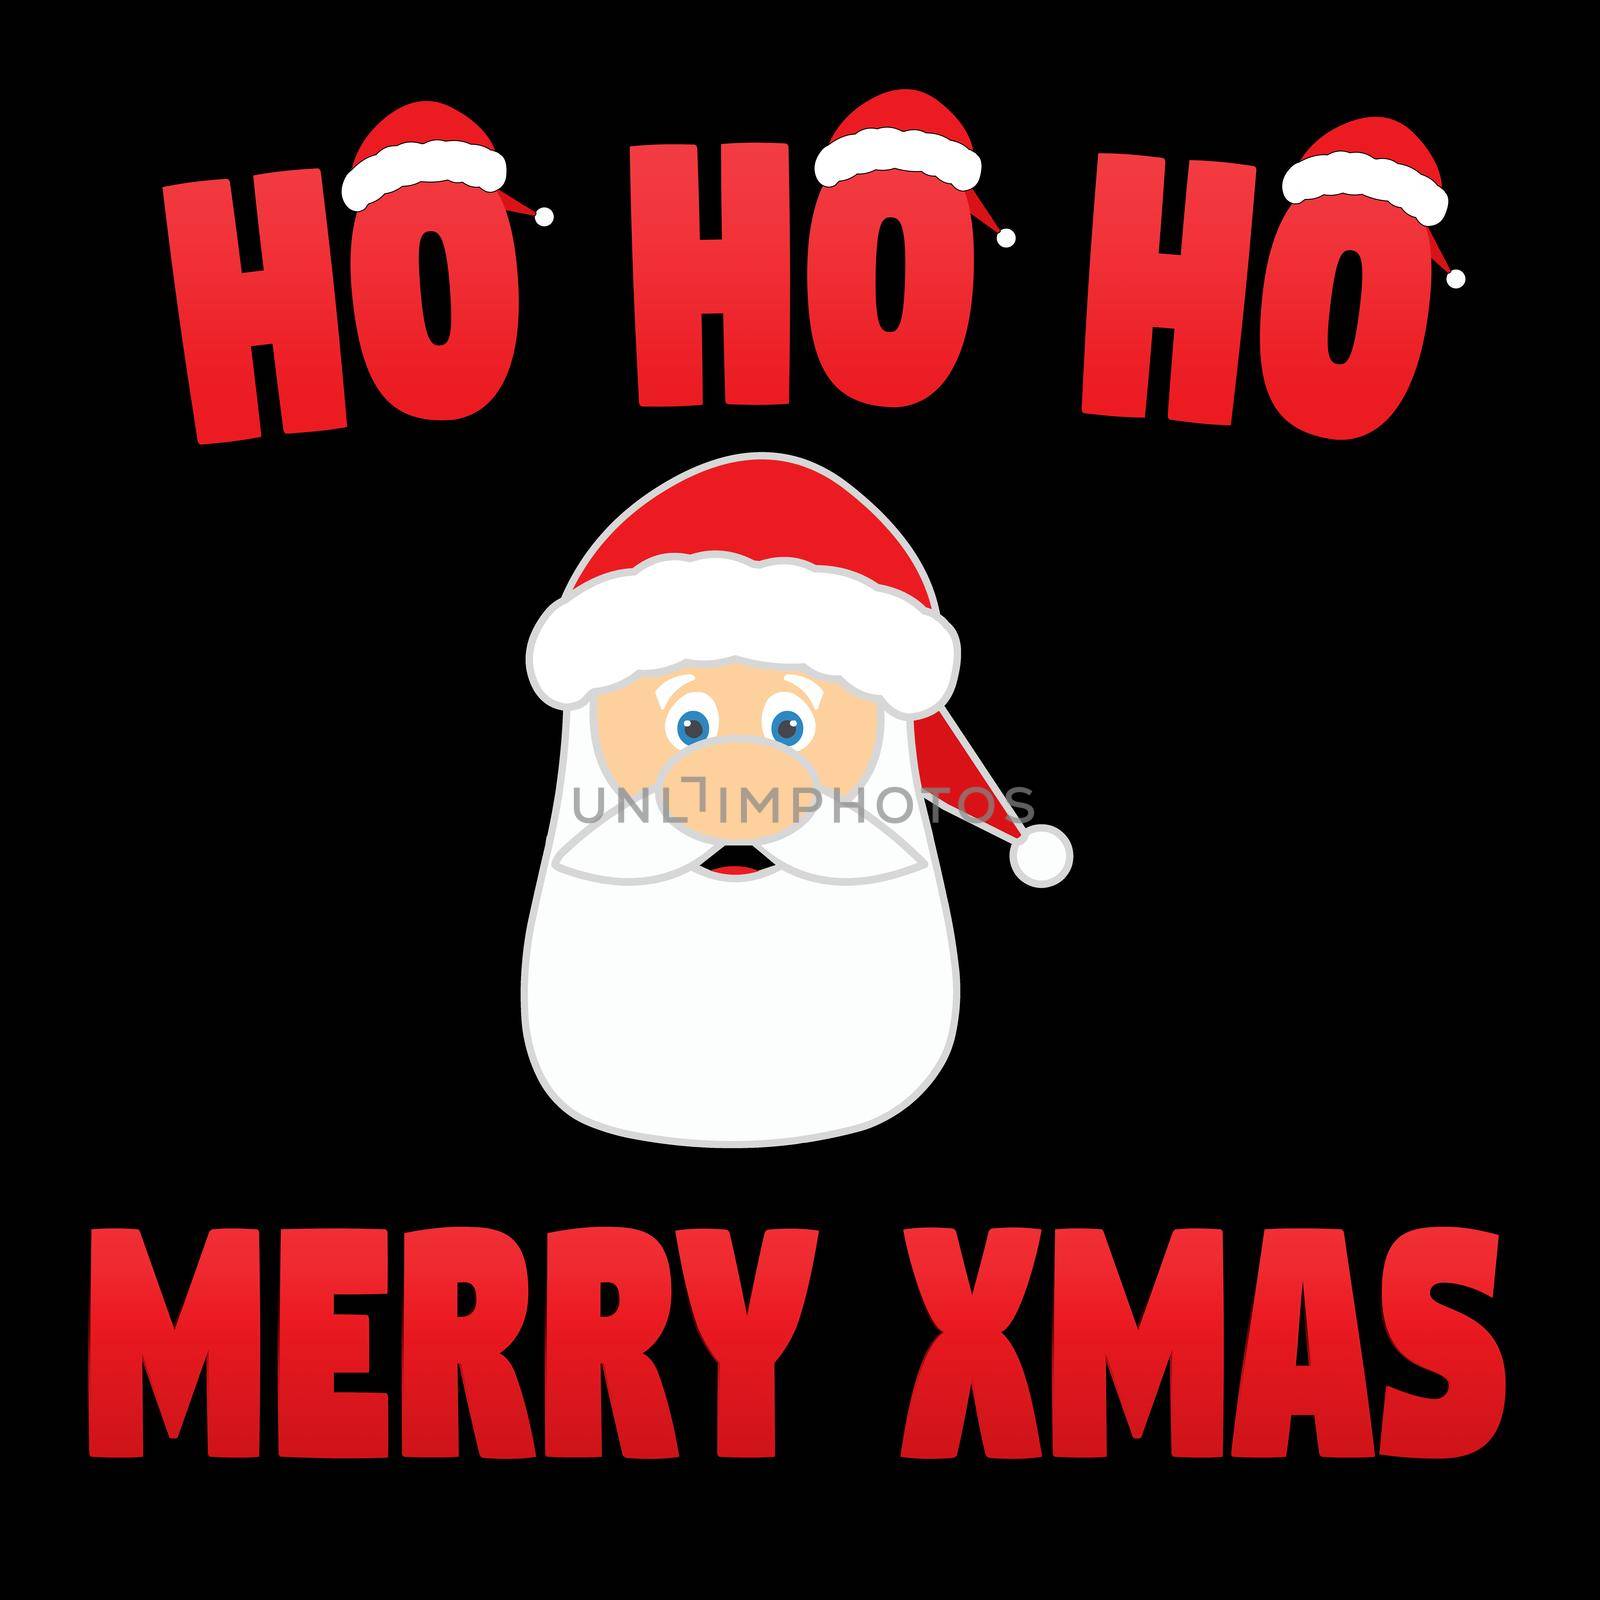 Ho Ho Ho Merry Xmas by Bigalbaloo